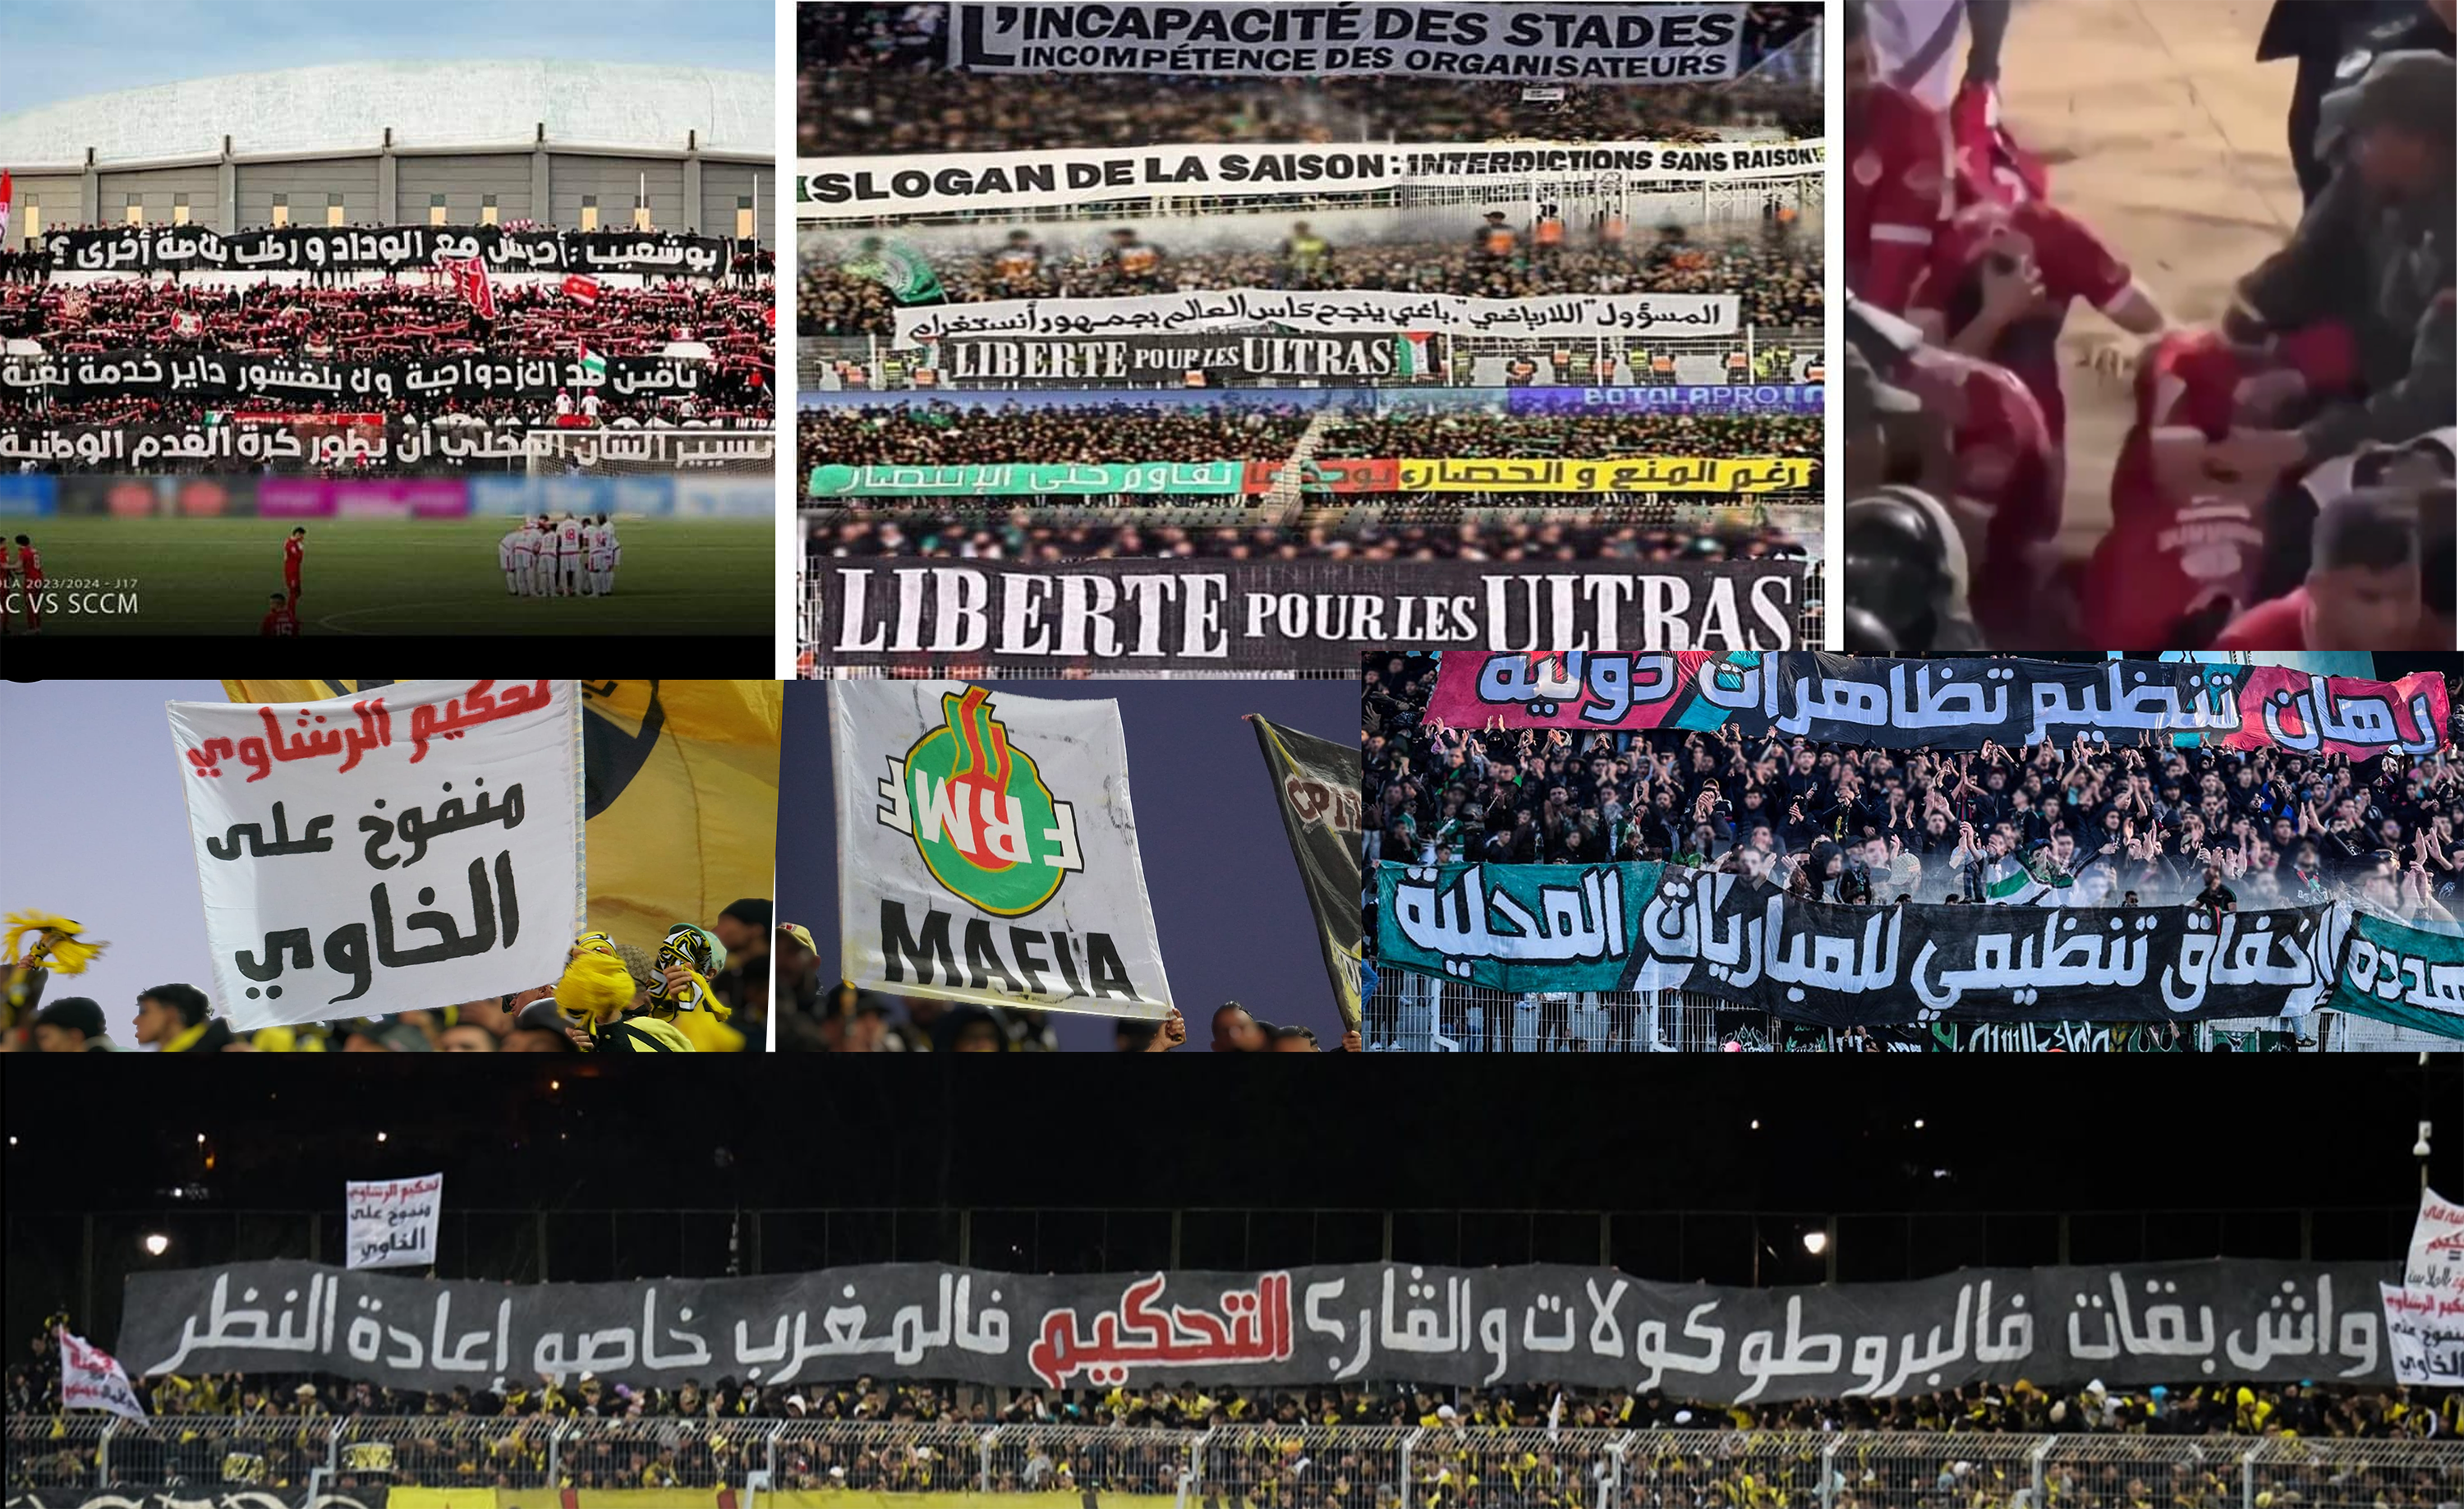 عدالة ميزان العقوبات في كرة القدم المغربية و جدلية الإنصاف والتمييز